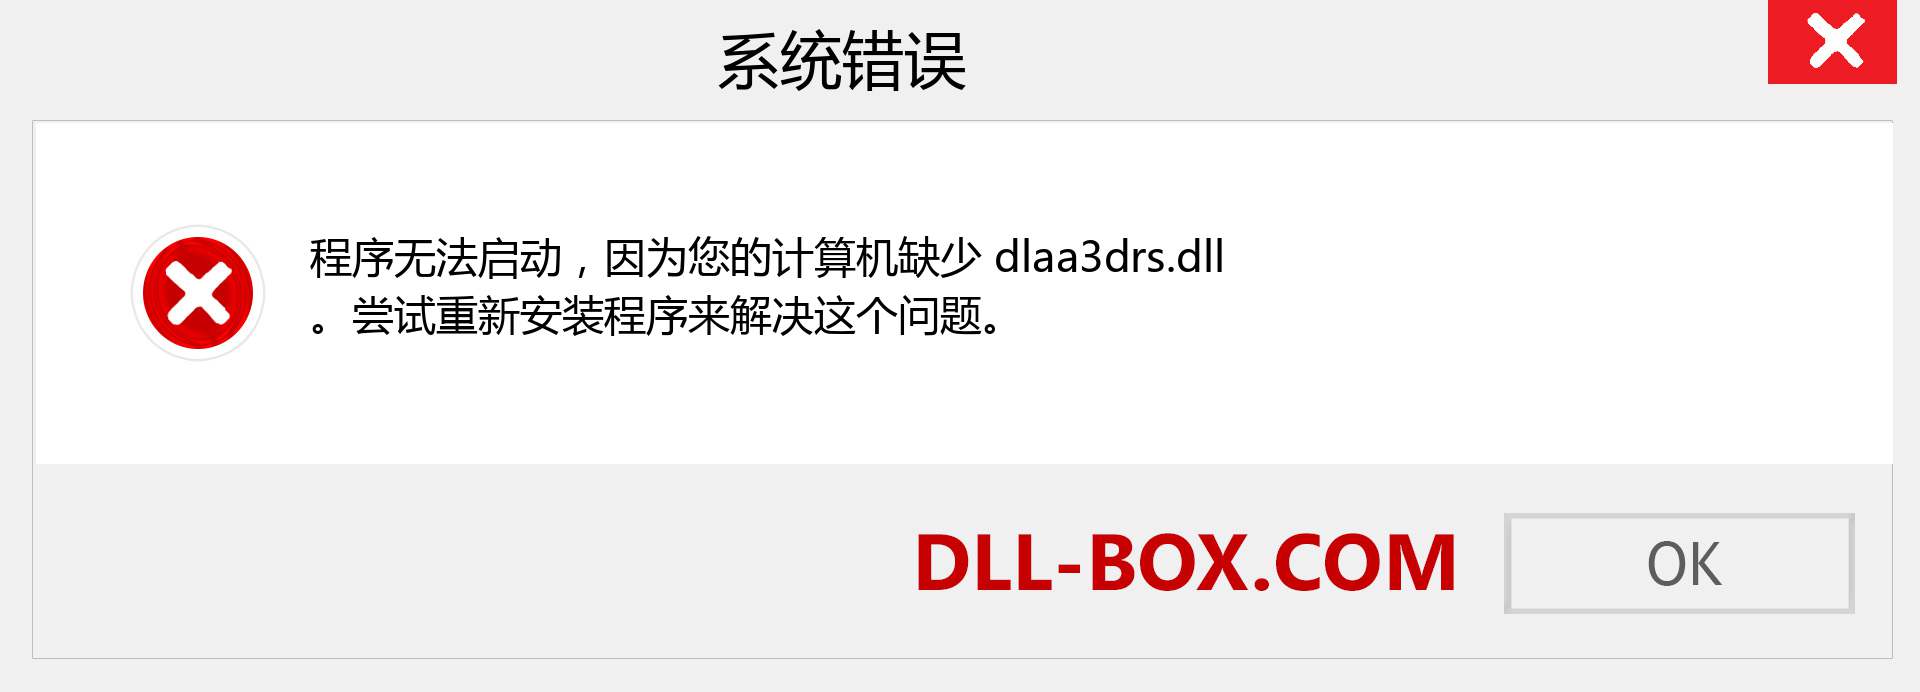 dlaa3drs.dll 文件丢失？。 适用于 Windows 7、8、10 的下载 - 修复 Windows、照片、图像上的 dlaa3drs dll 丢失错误